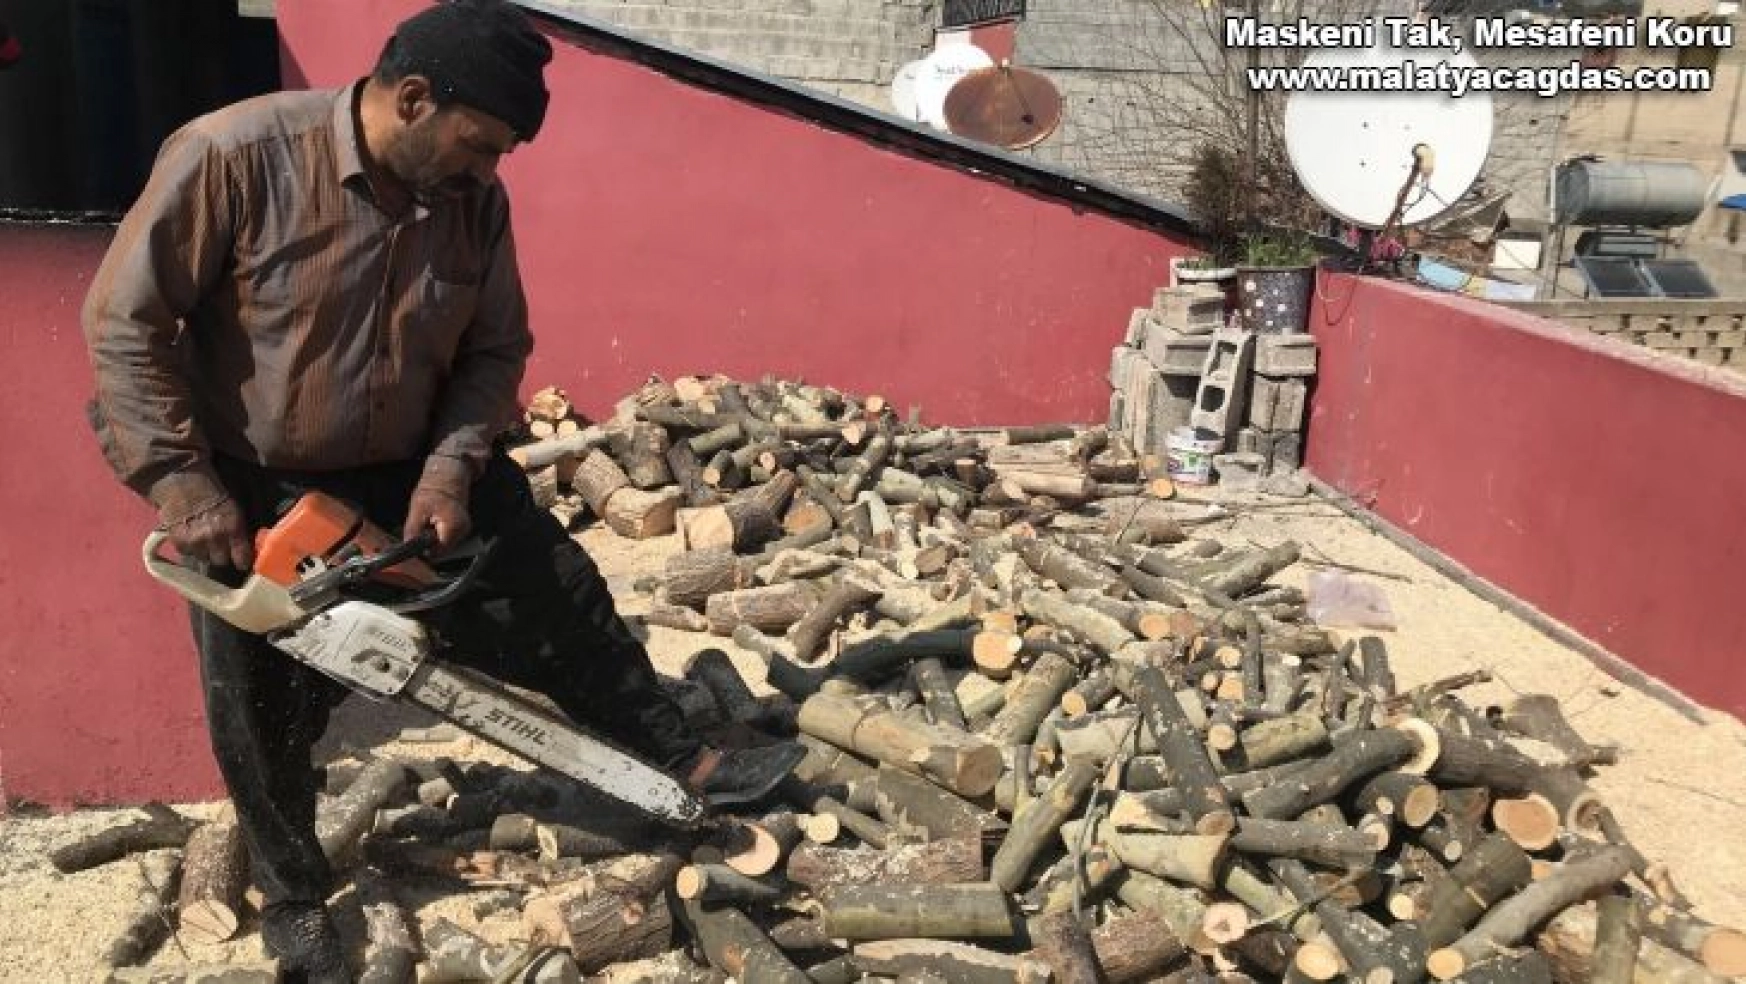 35 yıldır mahalle mahalle gezip odun keserek ailesinin geçimini sağlıyor